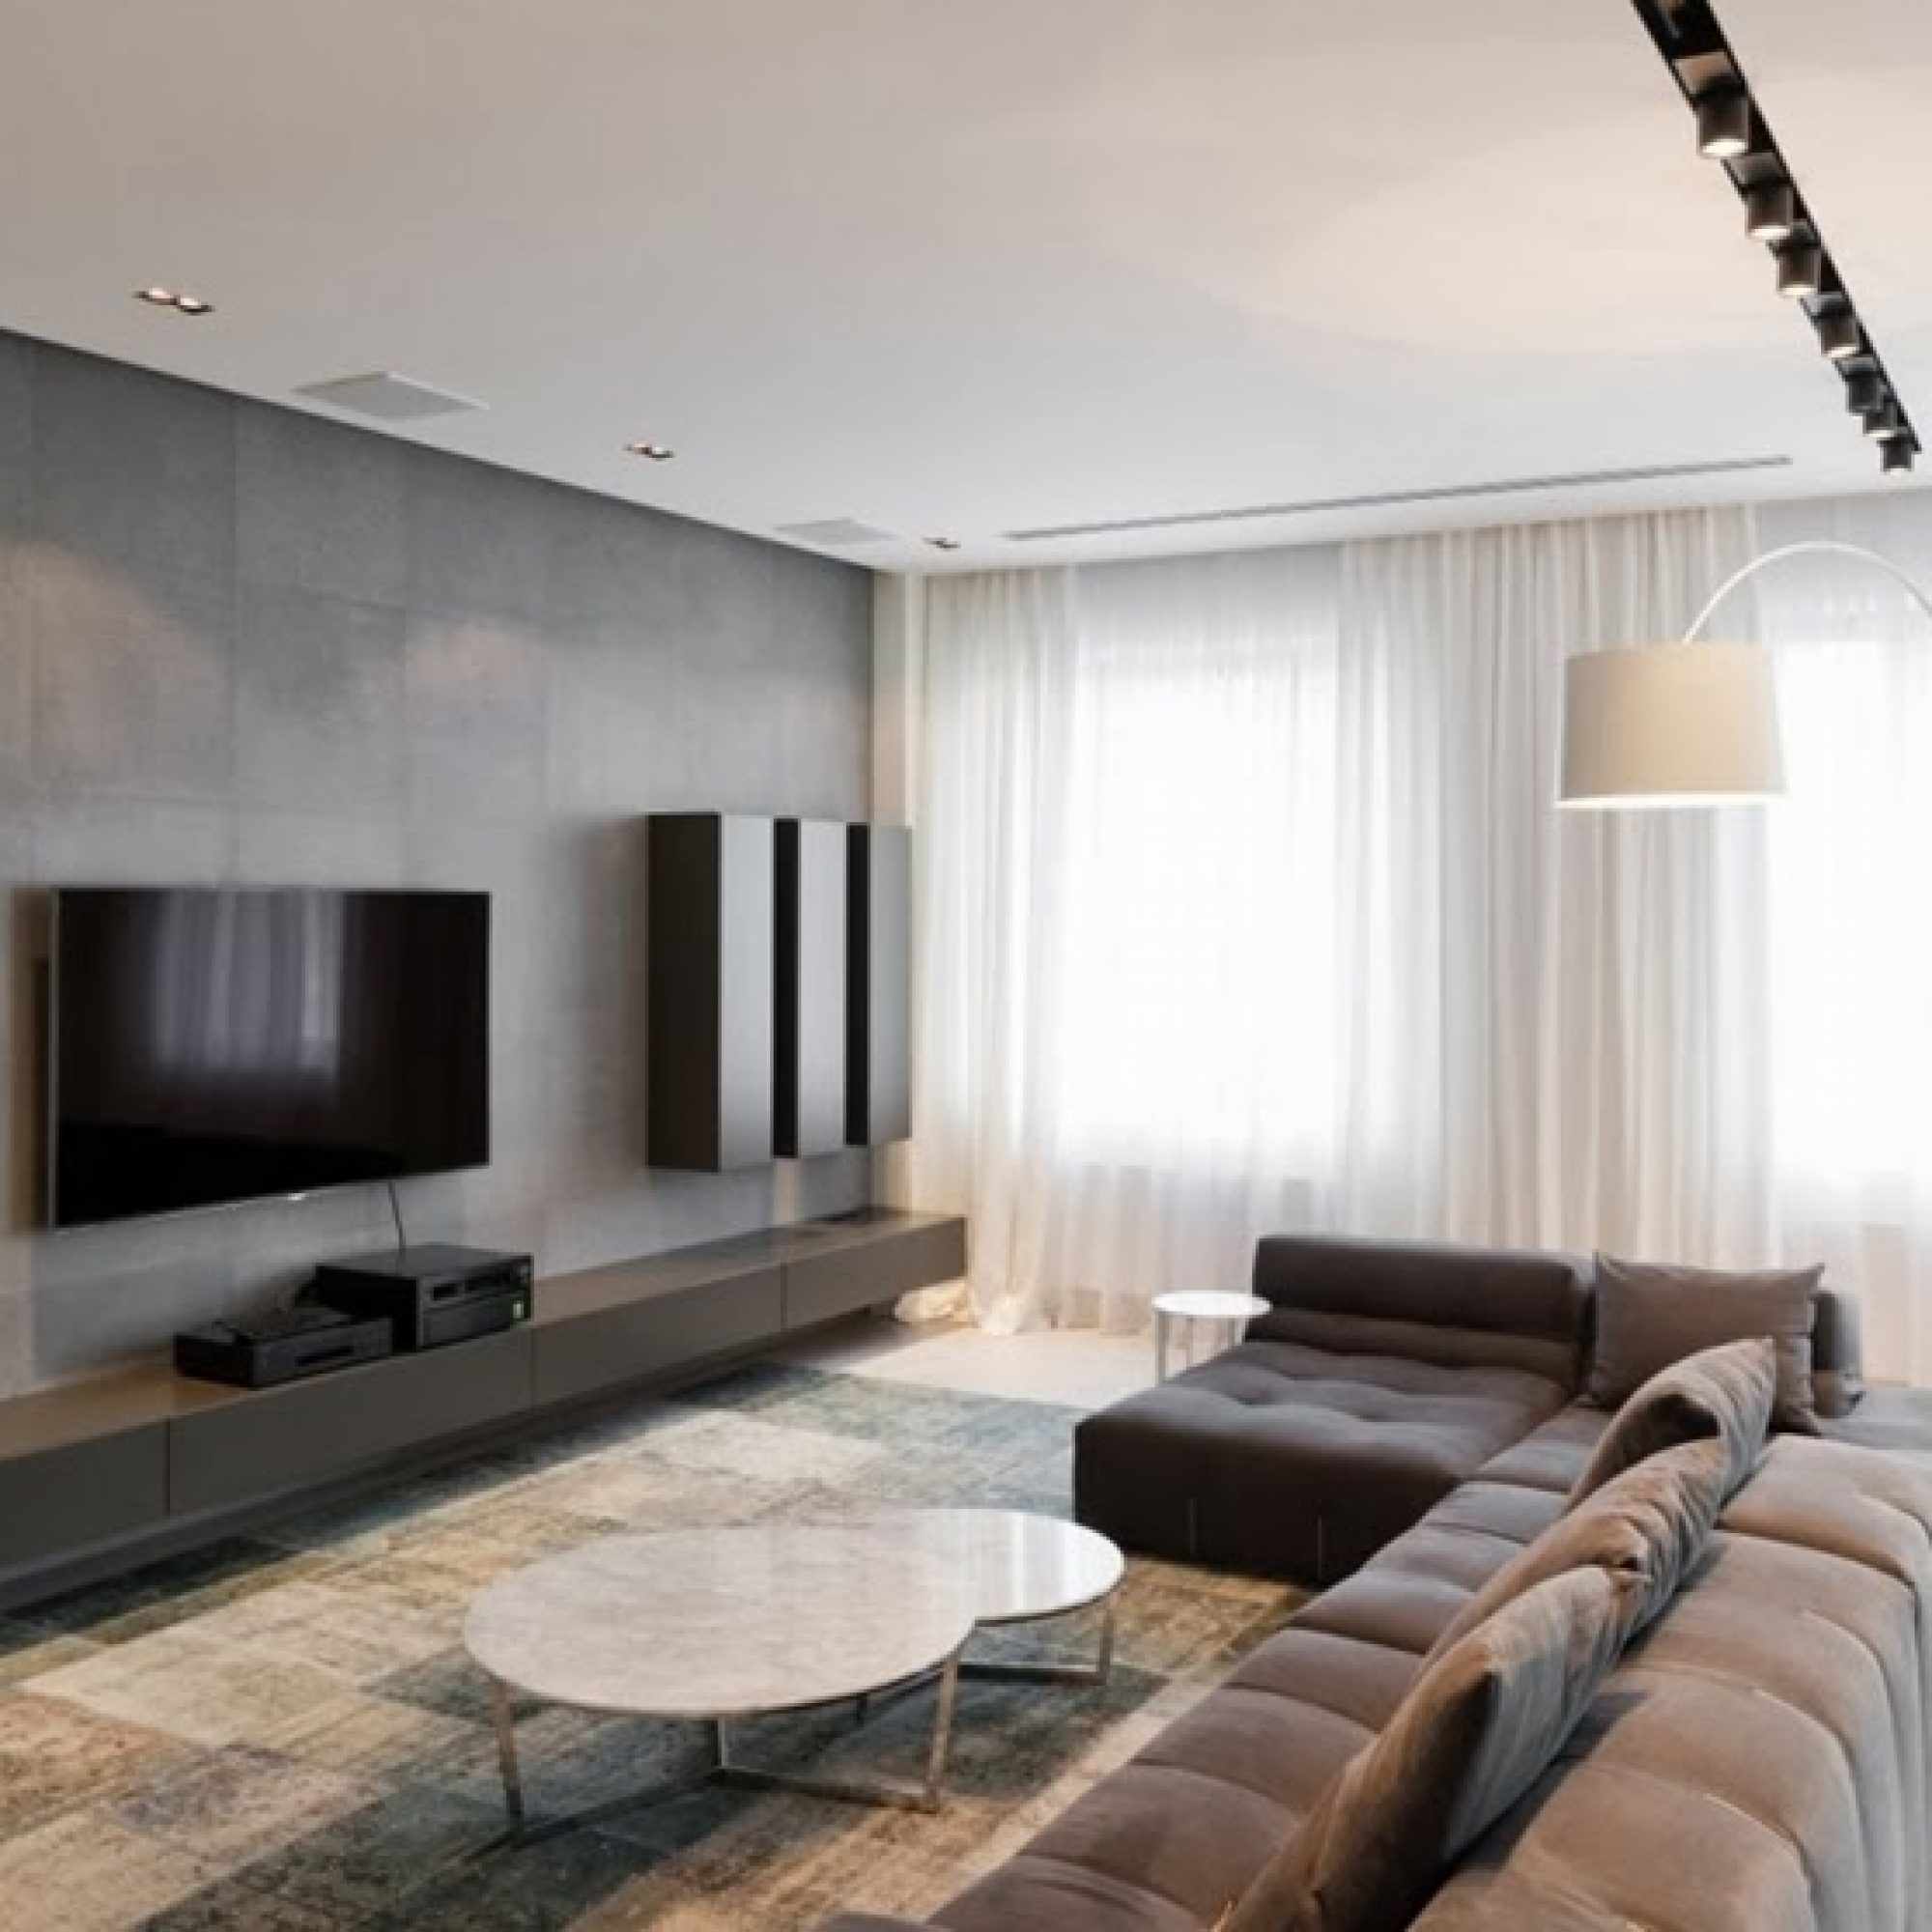 minimalizm tarzında bir oturma odasının hafif bir tasarımını uygulama fikri